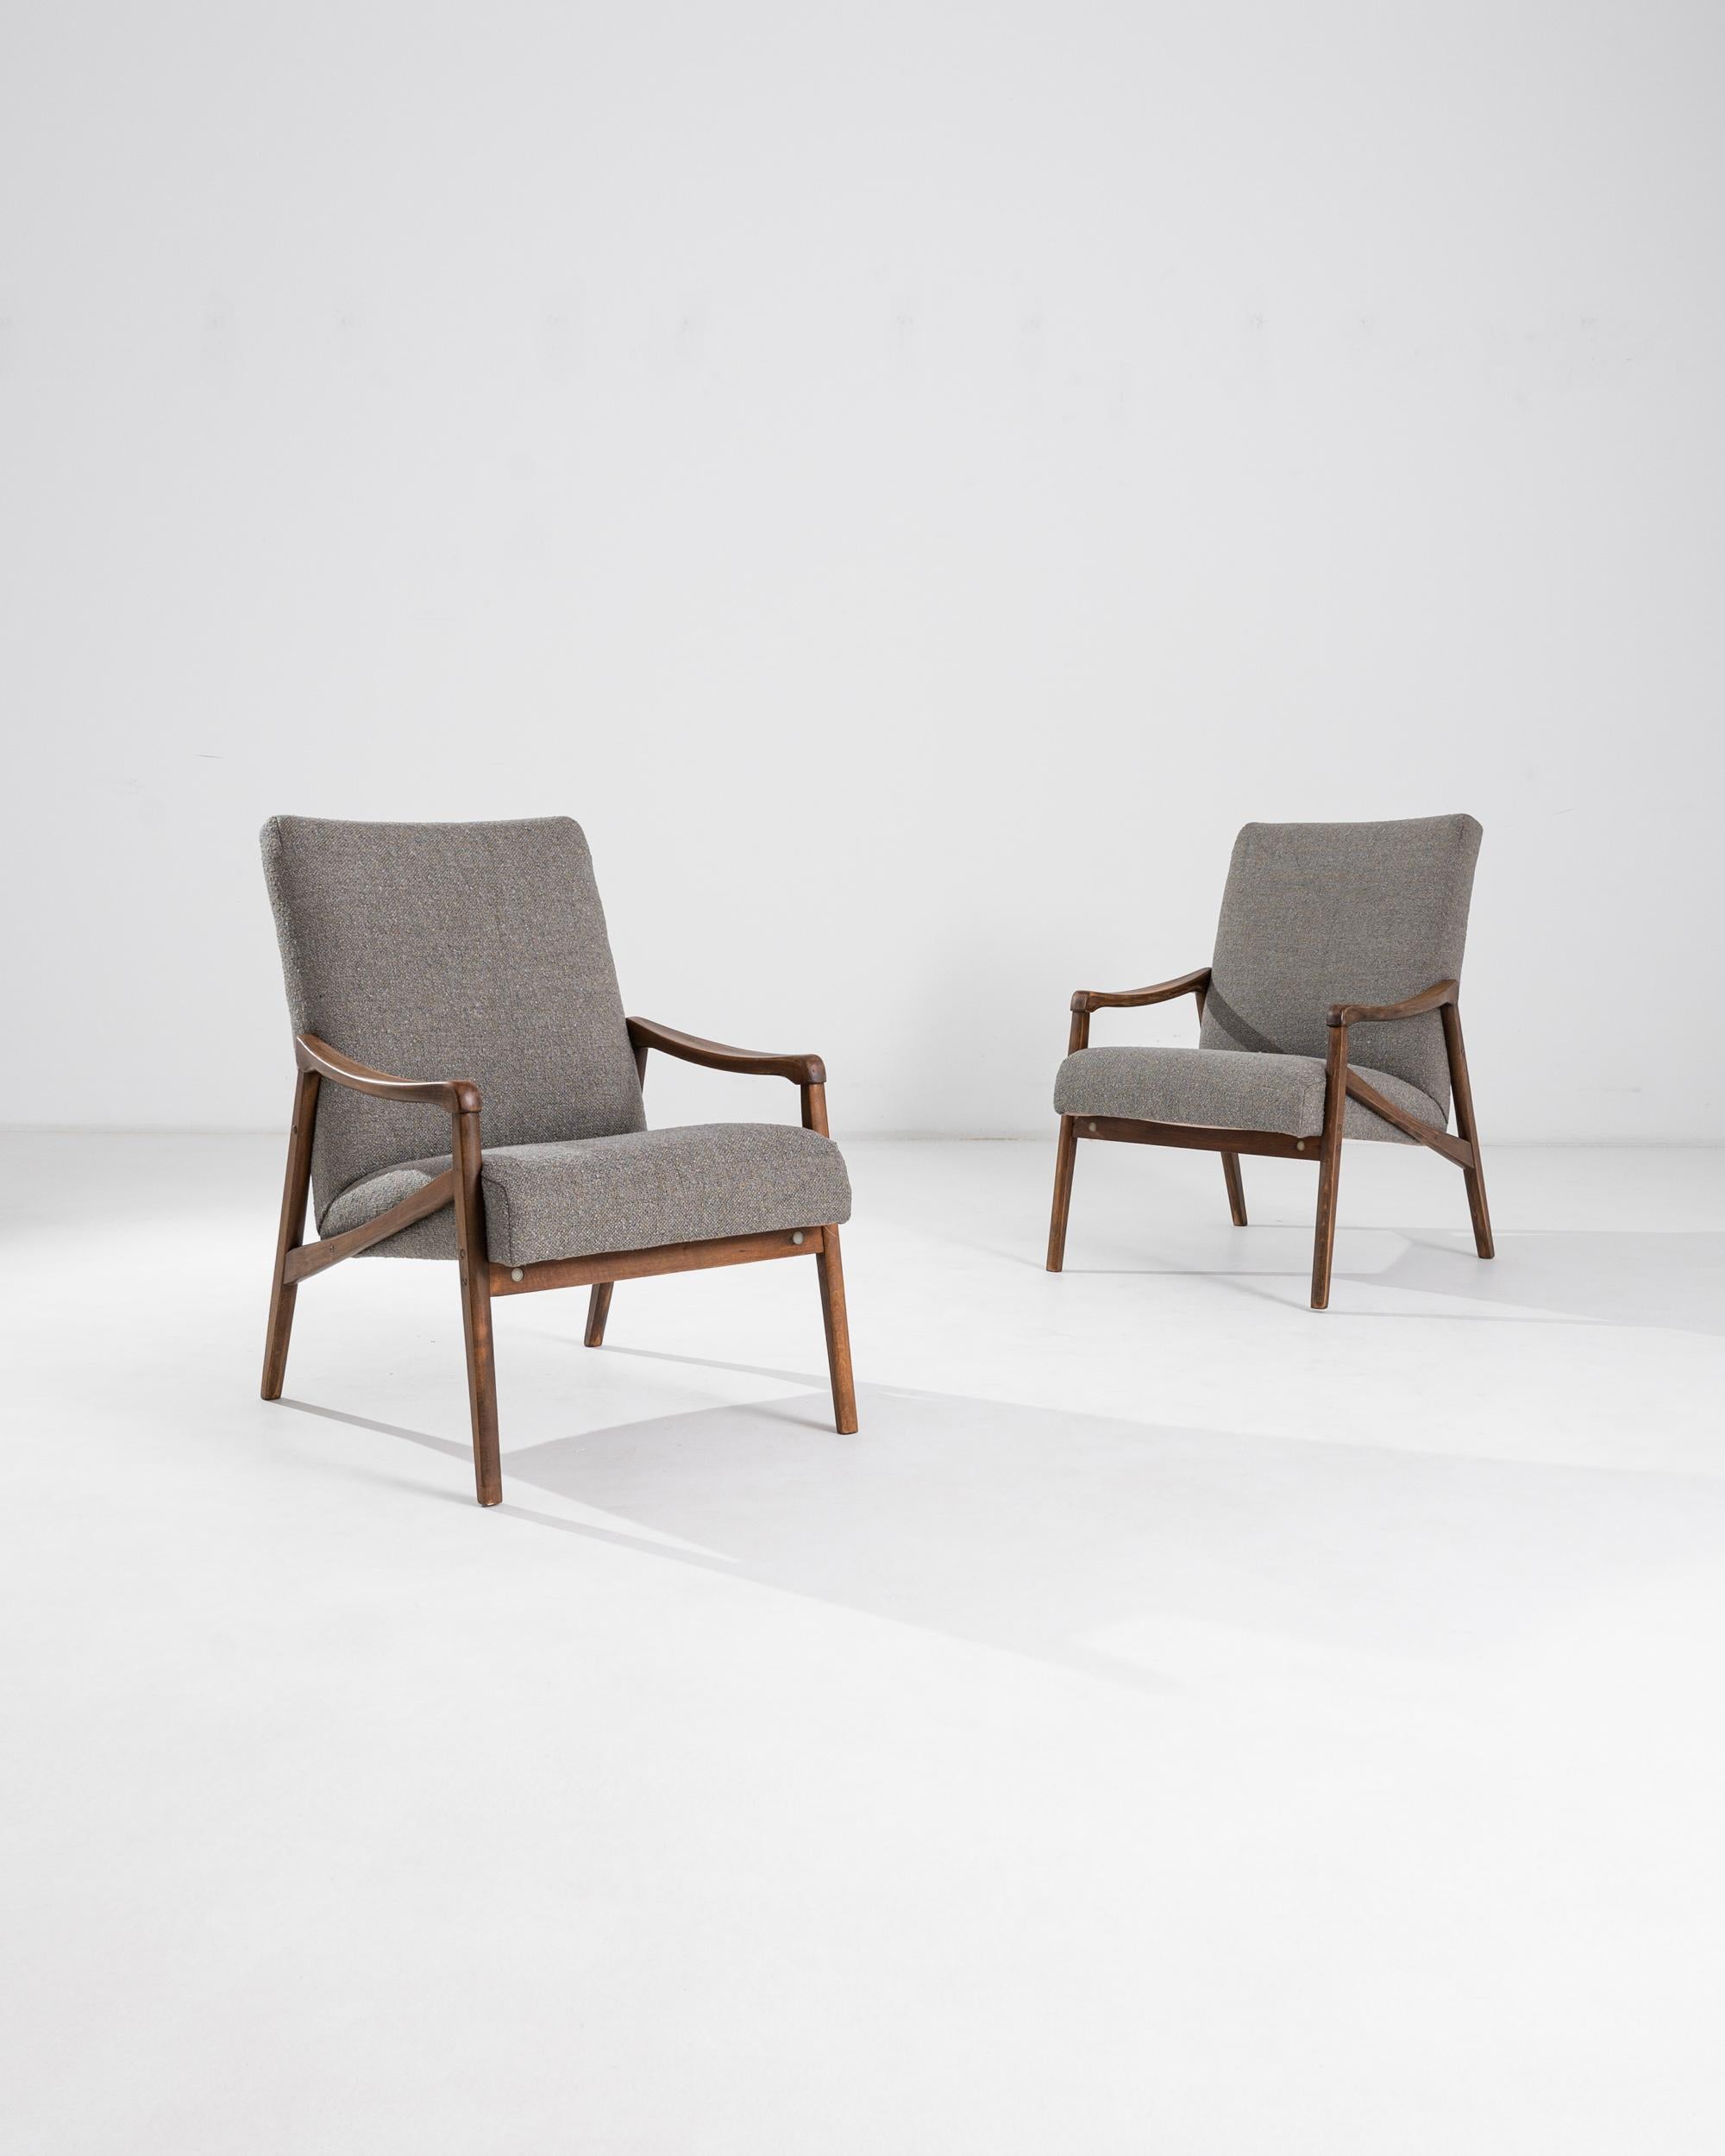 Une paire de fauteuils produits dans l'ancienne Tchécoslovaquie, dont le design est attribué à Jiri Jiroutek. Ce modèle des années 1960 a été retapissé dans un tissu bouclé taupe actualisé ; le ton neutre a été choisi pour s'harmoniser avec le style